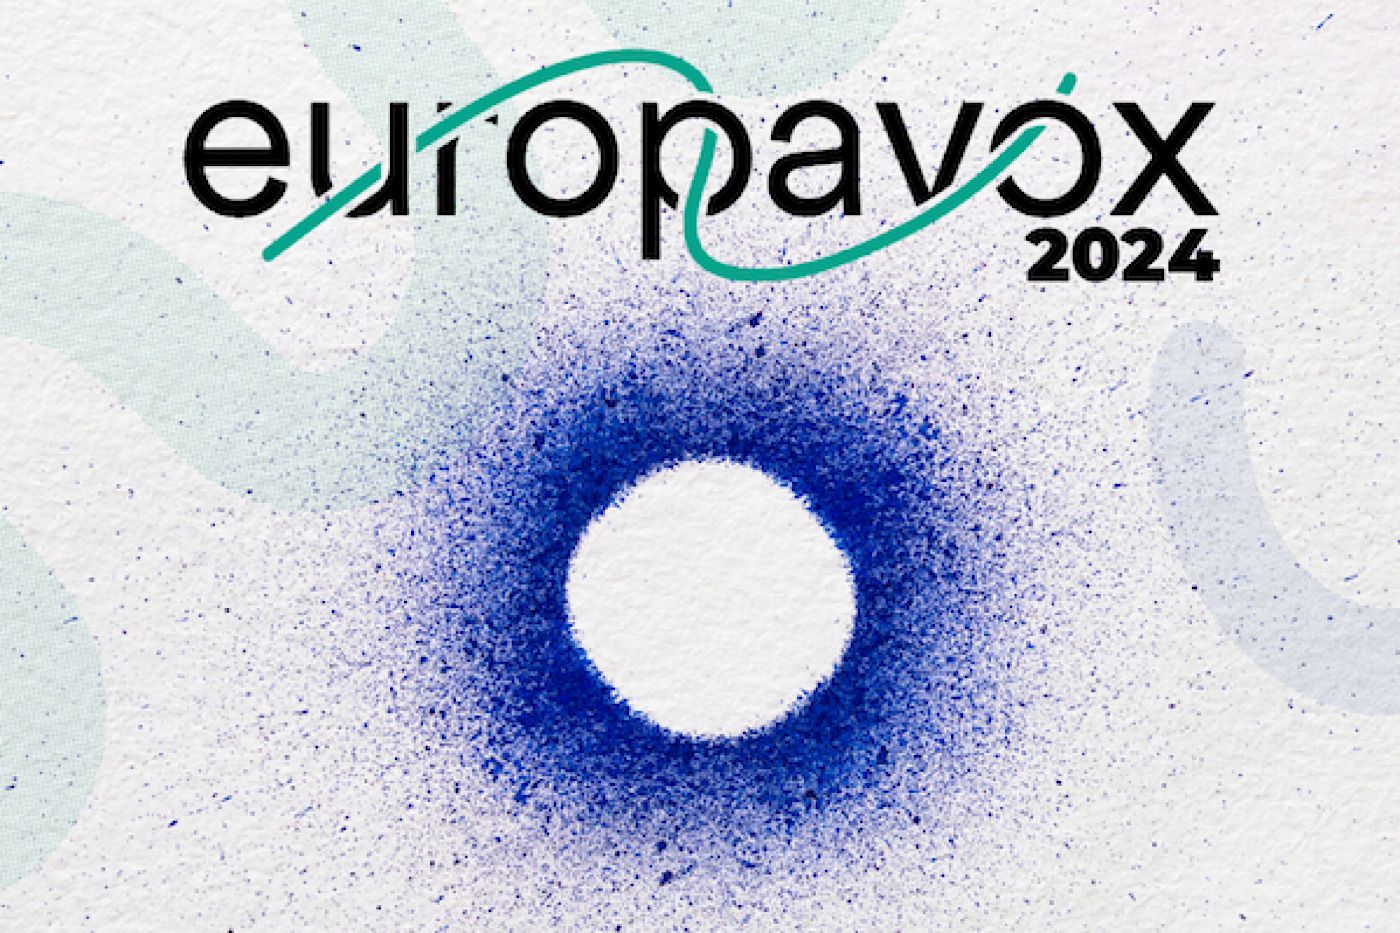 EUROPAVOX 2024 – 8 e 9 marzo presso Estragon Club, Bologna